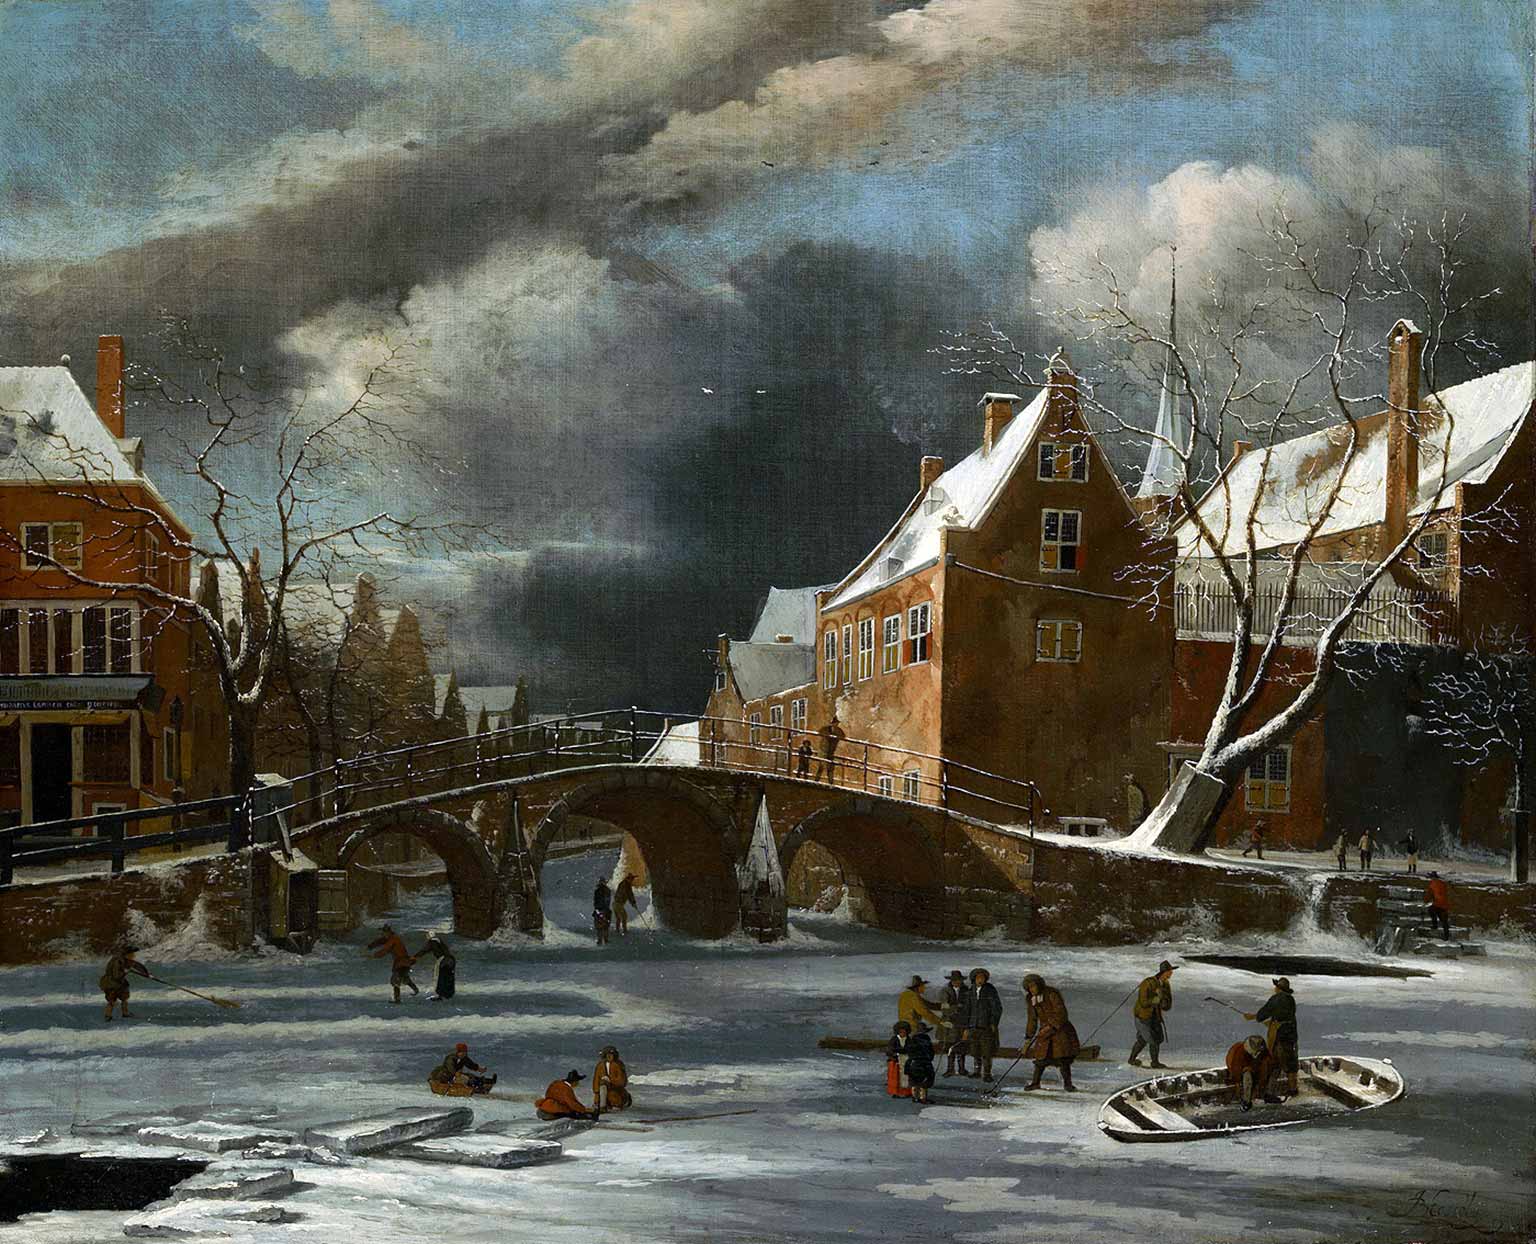 Spui in winter (around 1655-1675), painting by Jan van Kessel